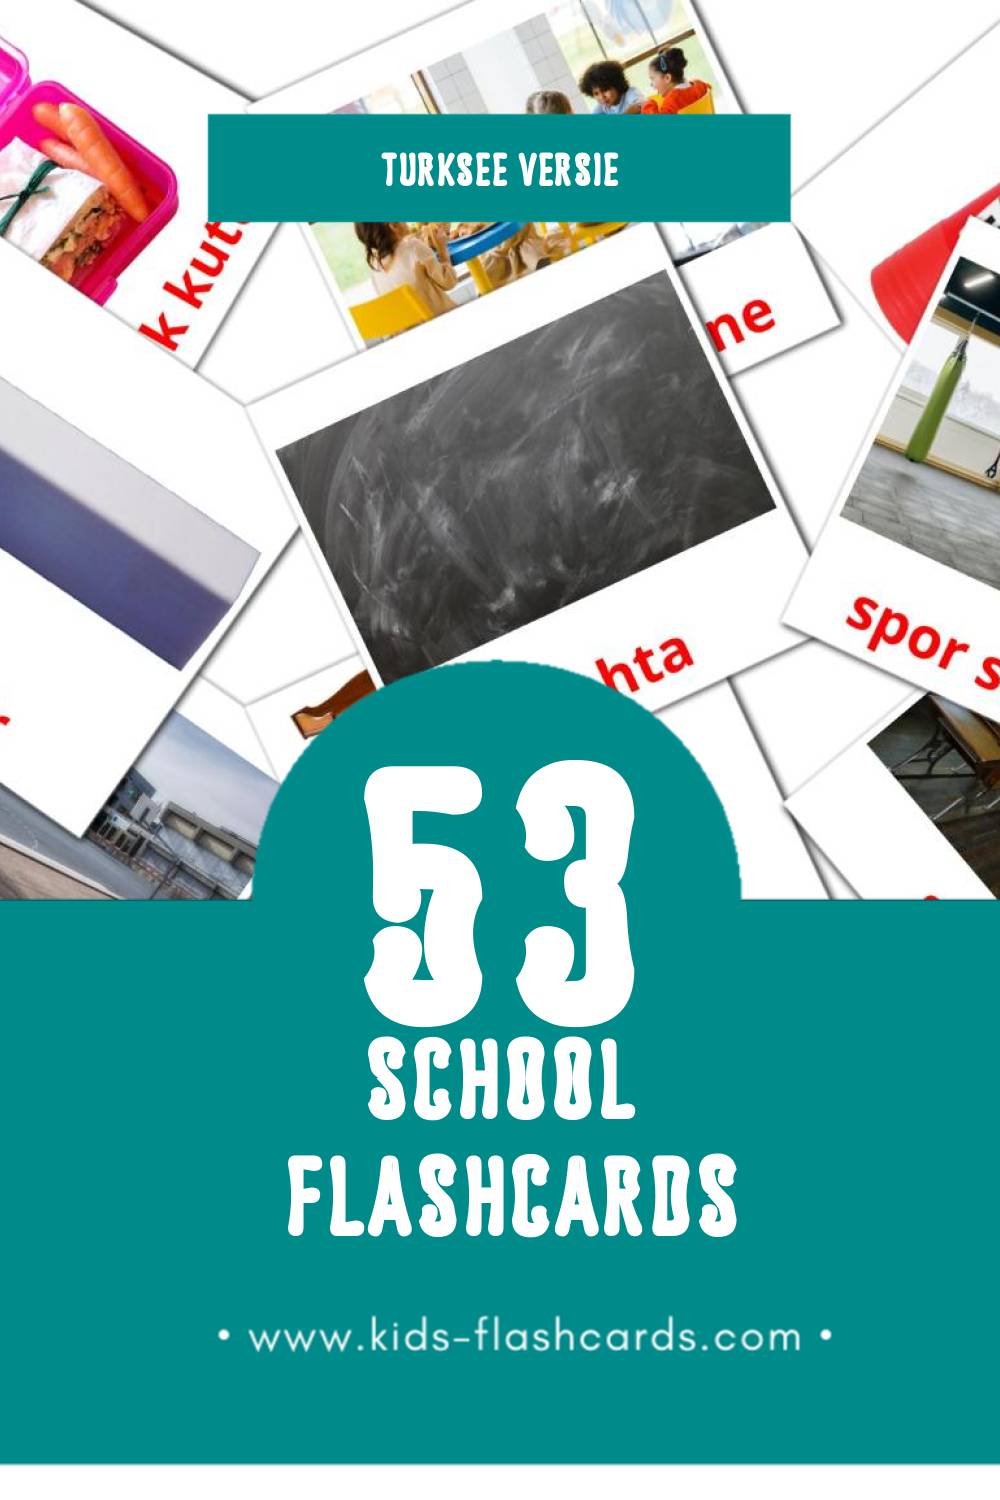 Visuele Okul Flashcards voor Kleuters (53 kaarten in het Turkse)